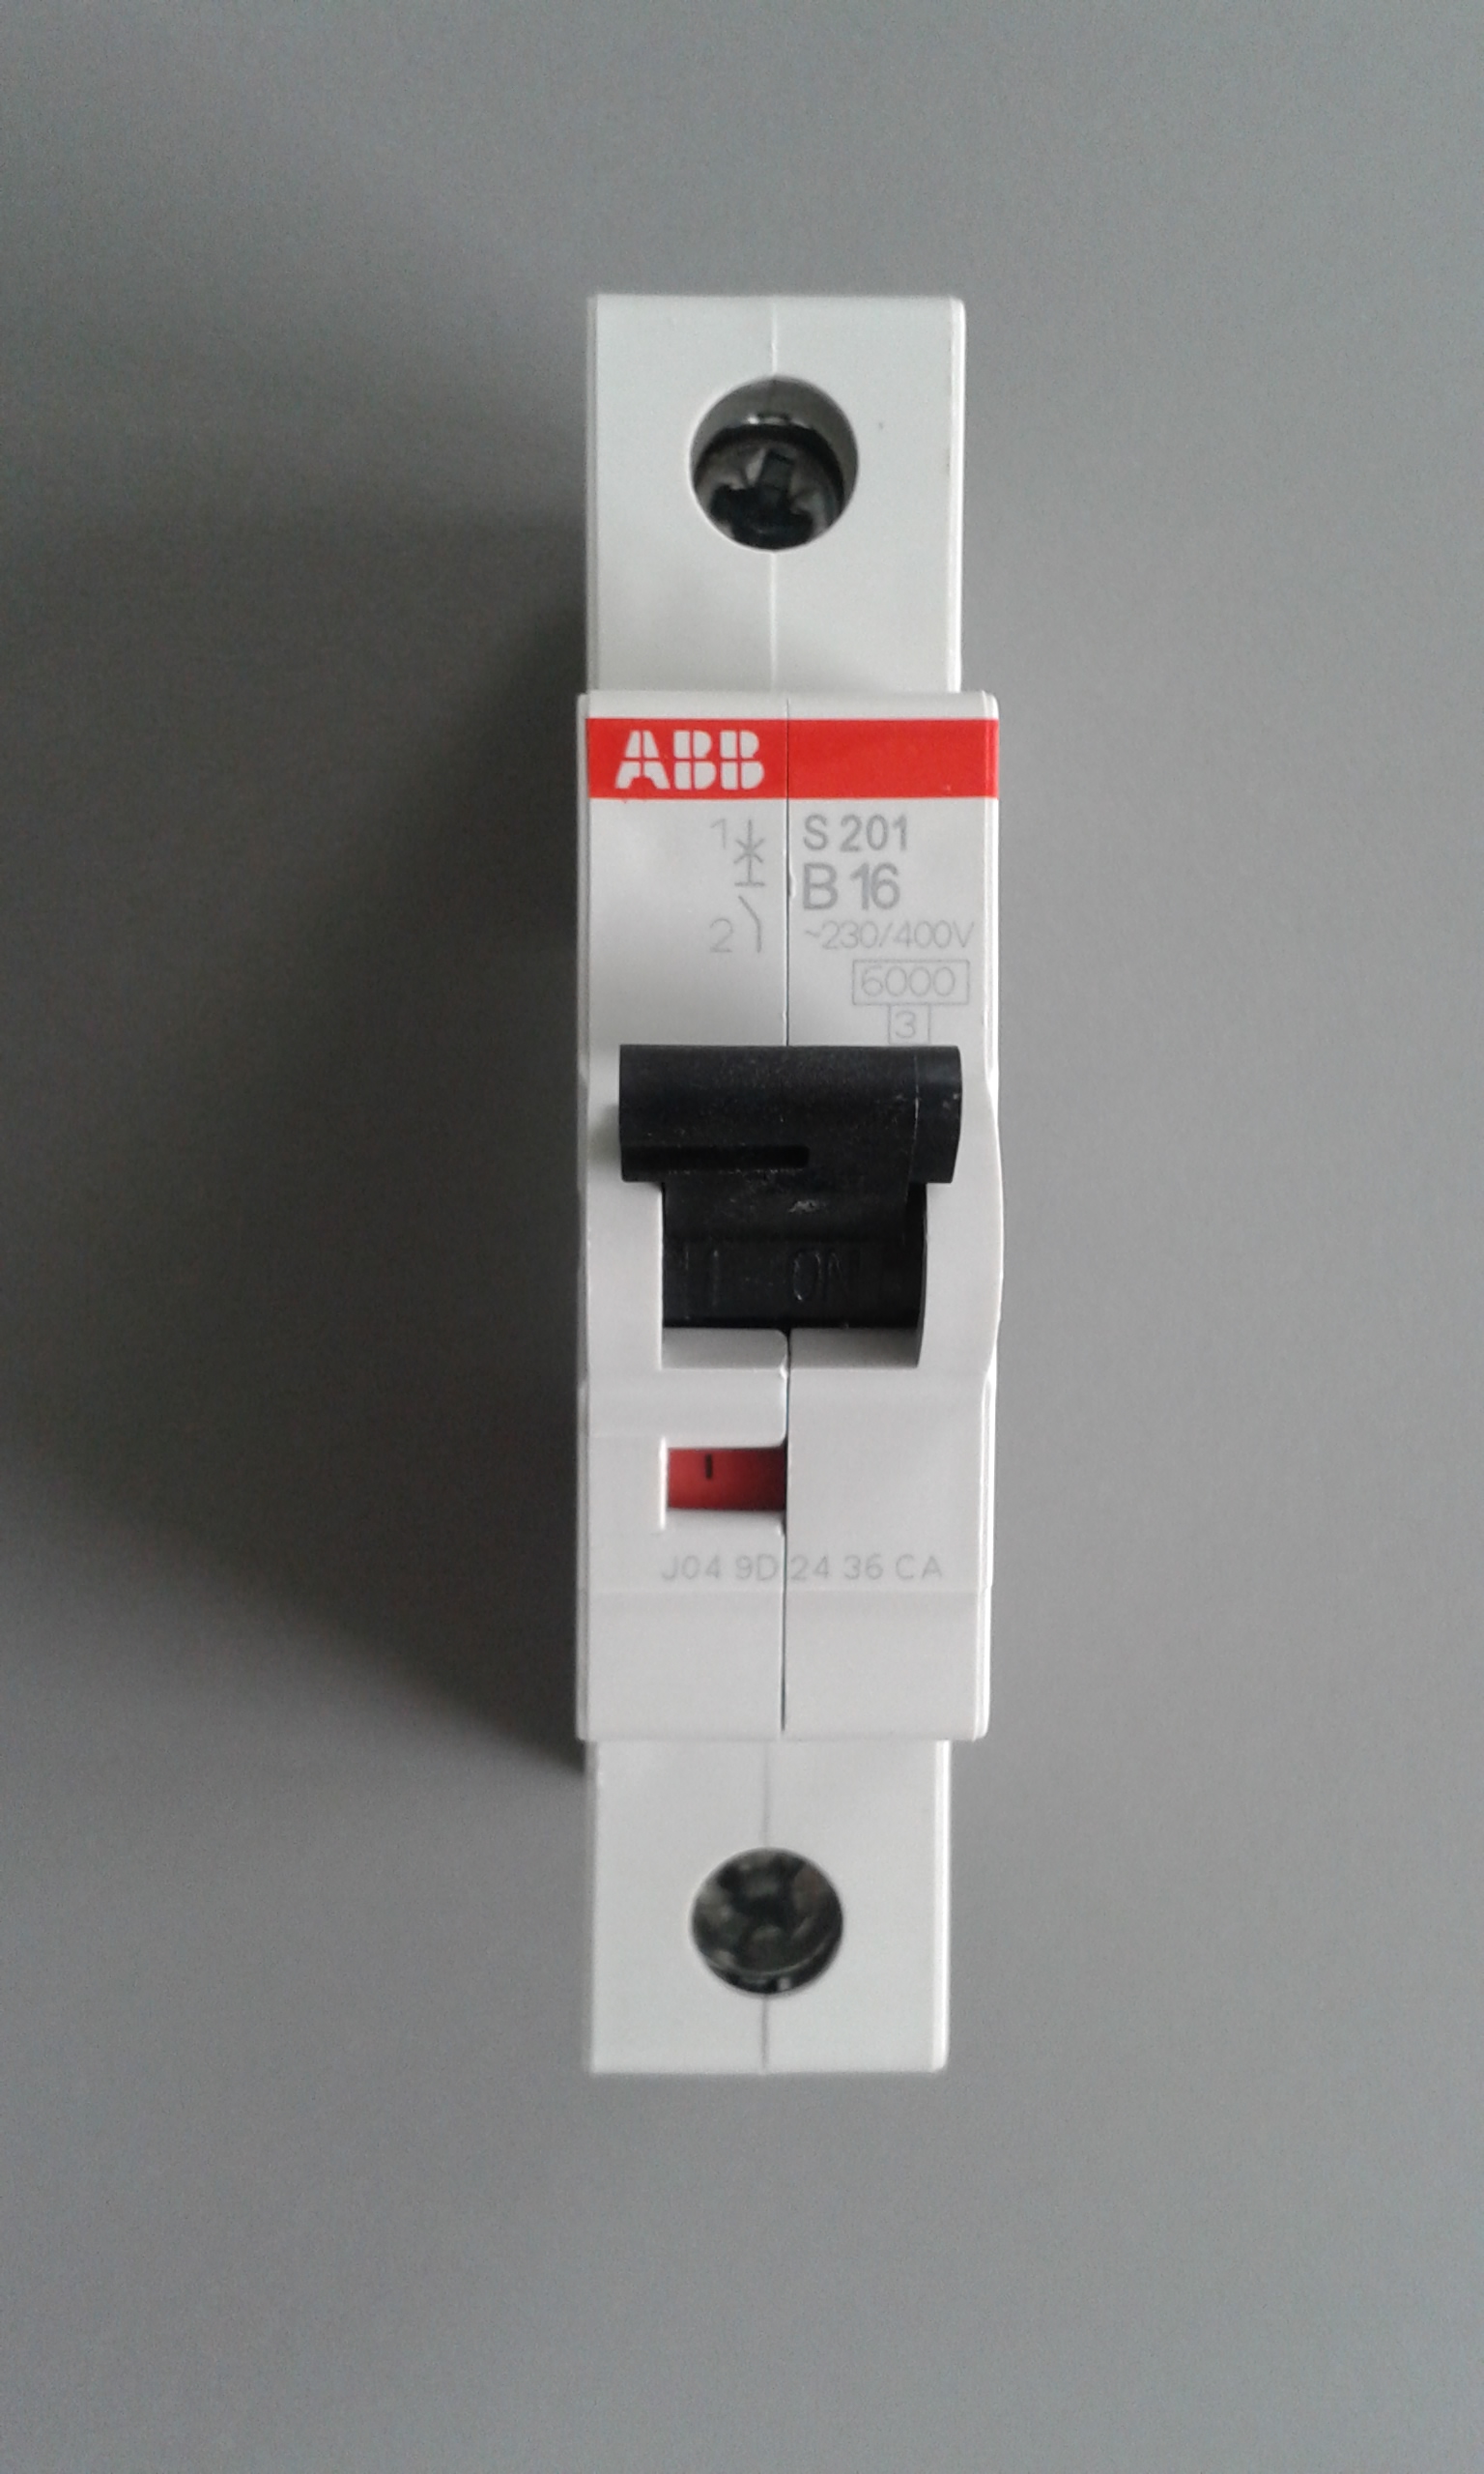 S201 16а. ABB s201 c16. Автоматический выключатель ABB s201. Автоматический выключатель ABB c16. Автомат ABB 16a однополюсный.